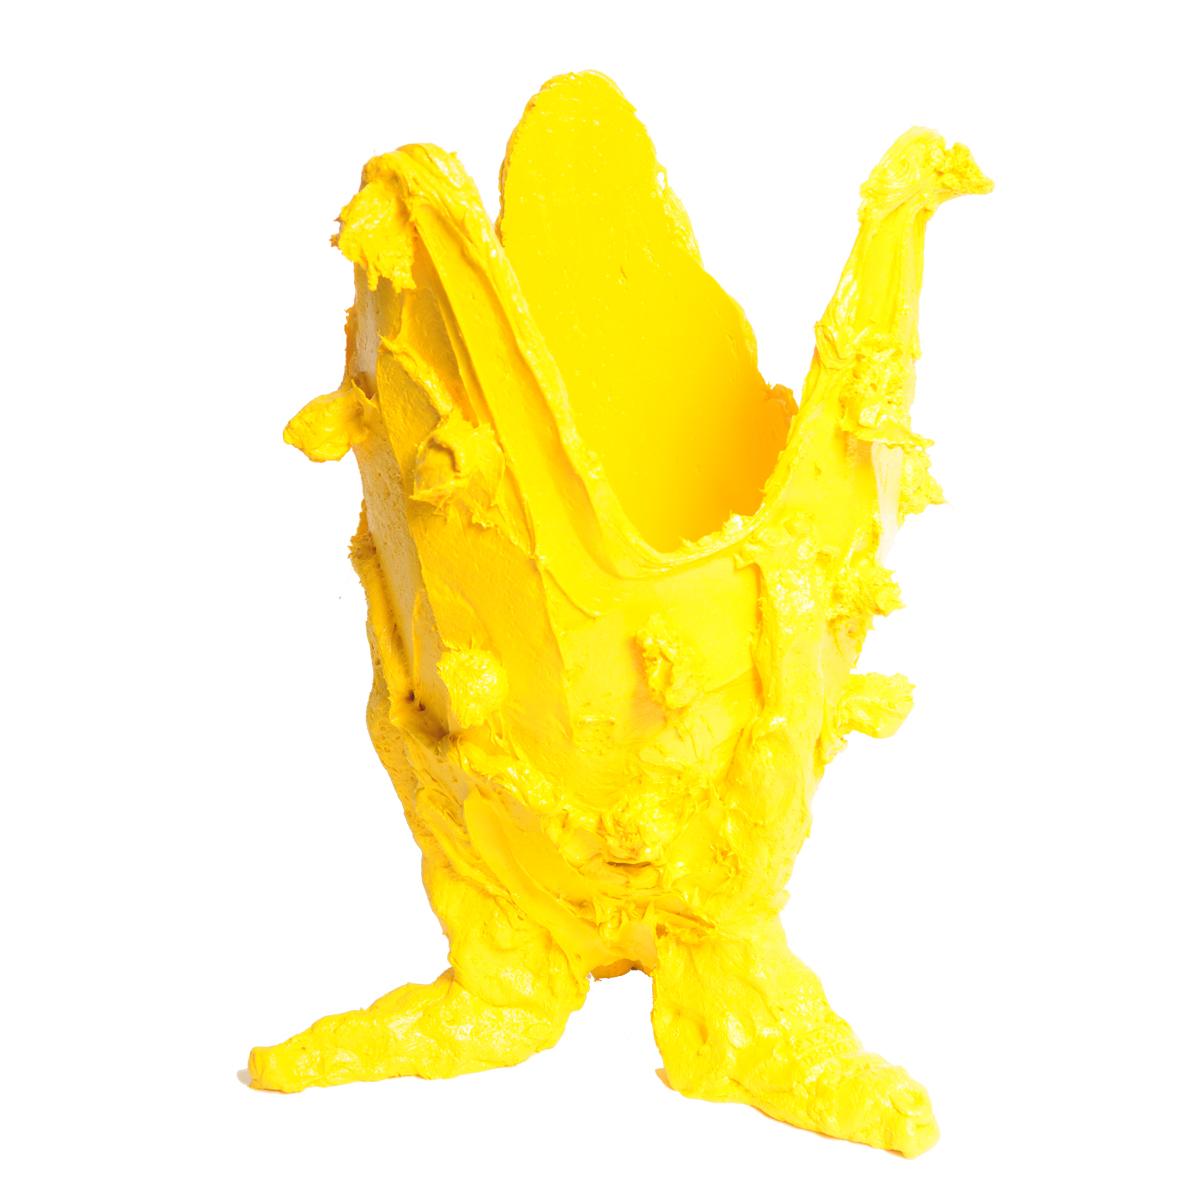 Jarrón especial limón, amarillo.
Jarrón de resina blanda diseñado por Gaetano Pesce en 1995 para la colección Fish Design.

Medidas: M - ø 16cm x H 26cm

Otros tamaños disponibles.
Jarrón de resina blanda diseñado por Gaetano Pesce en 1995